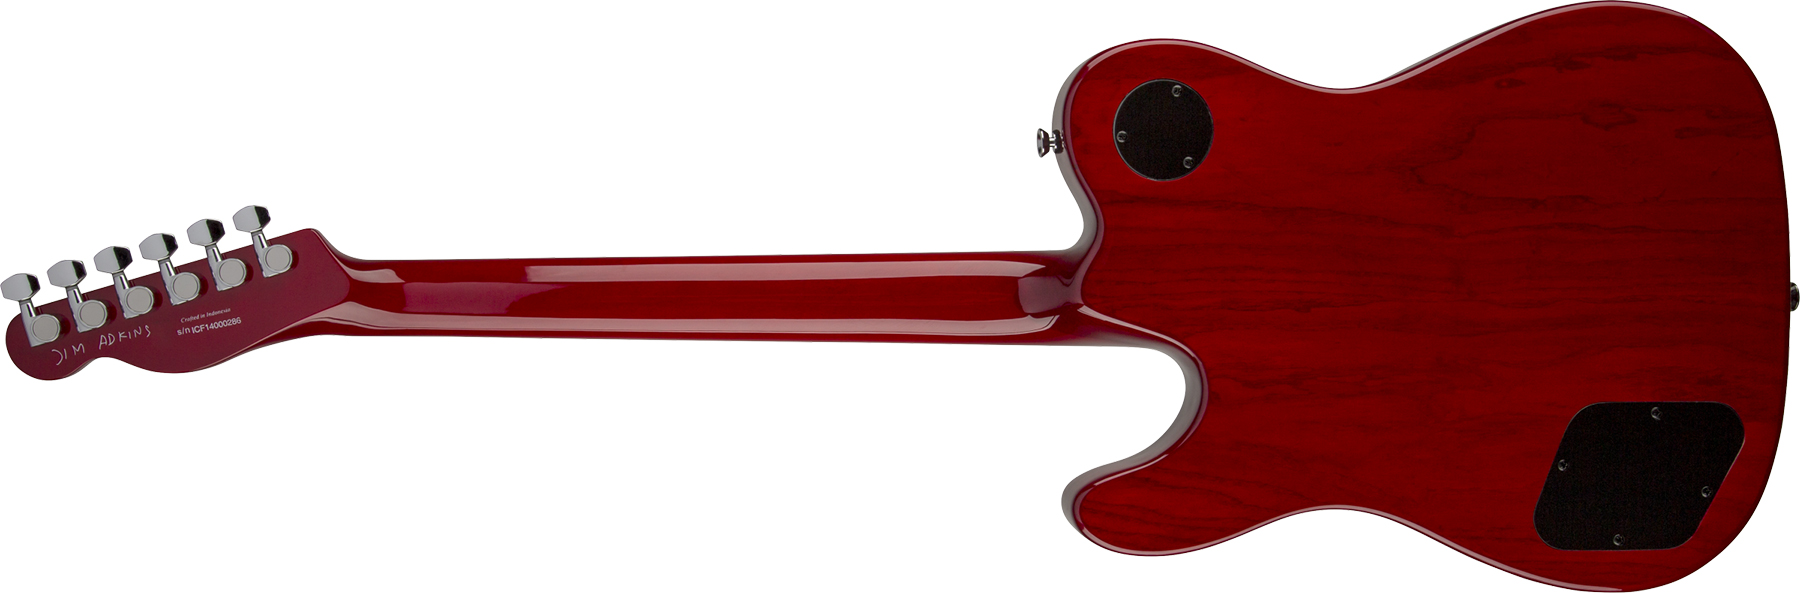 Fender Jim Adkins Tele Ja-90 Mex Signature 2p90 Lau - Crimson Red Transparent - Guitarra eléctrica con forma de tel - Variation 1